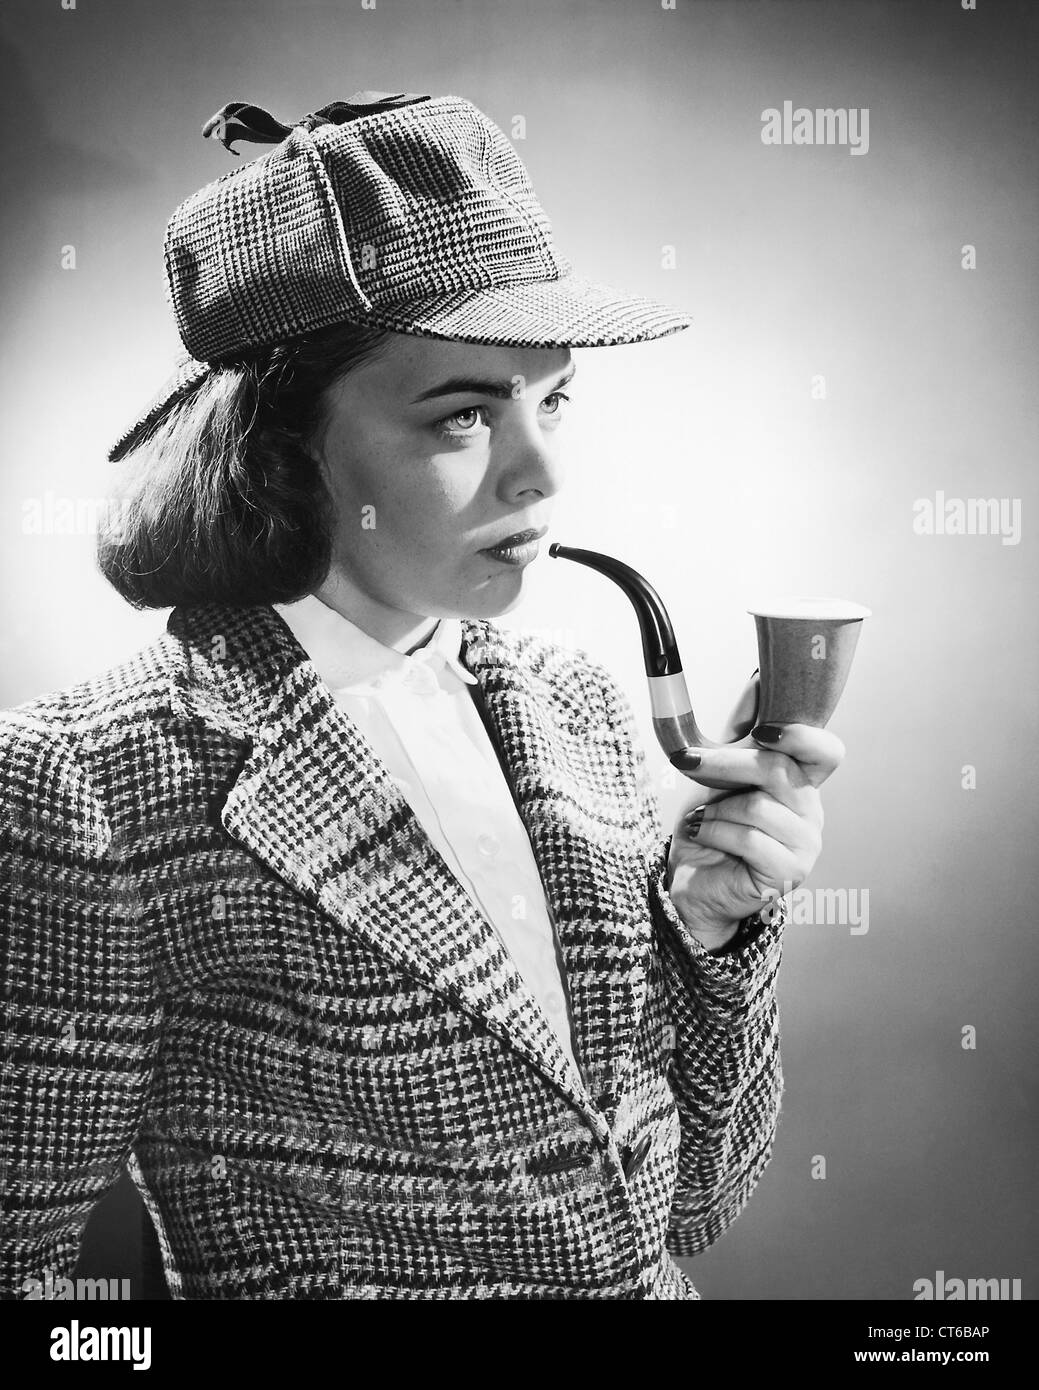 Vintage femme détective Sherlock Holmes fumant une pipe et wearing hat Banque D'Images